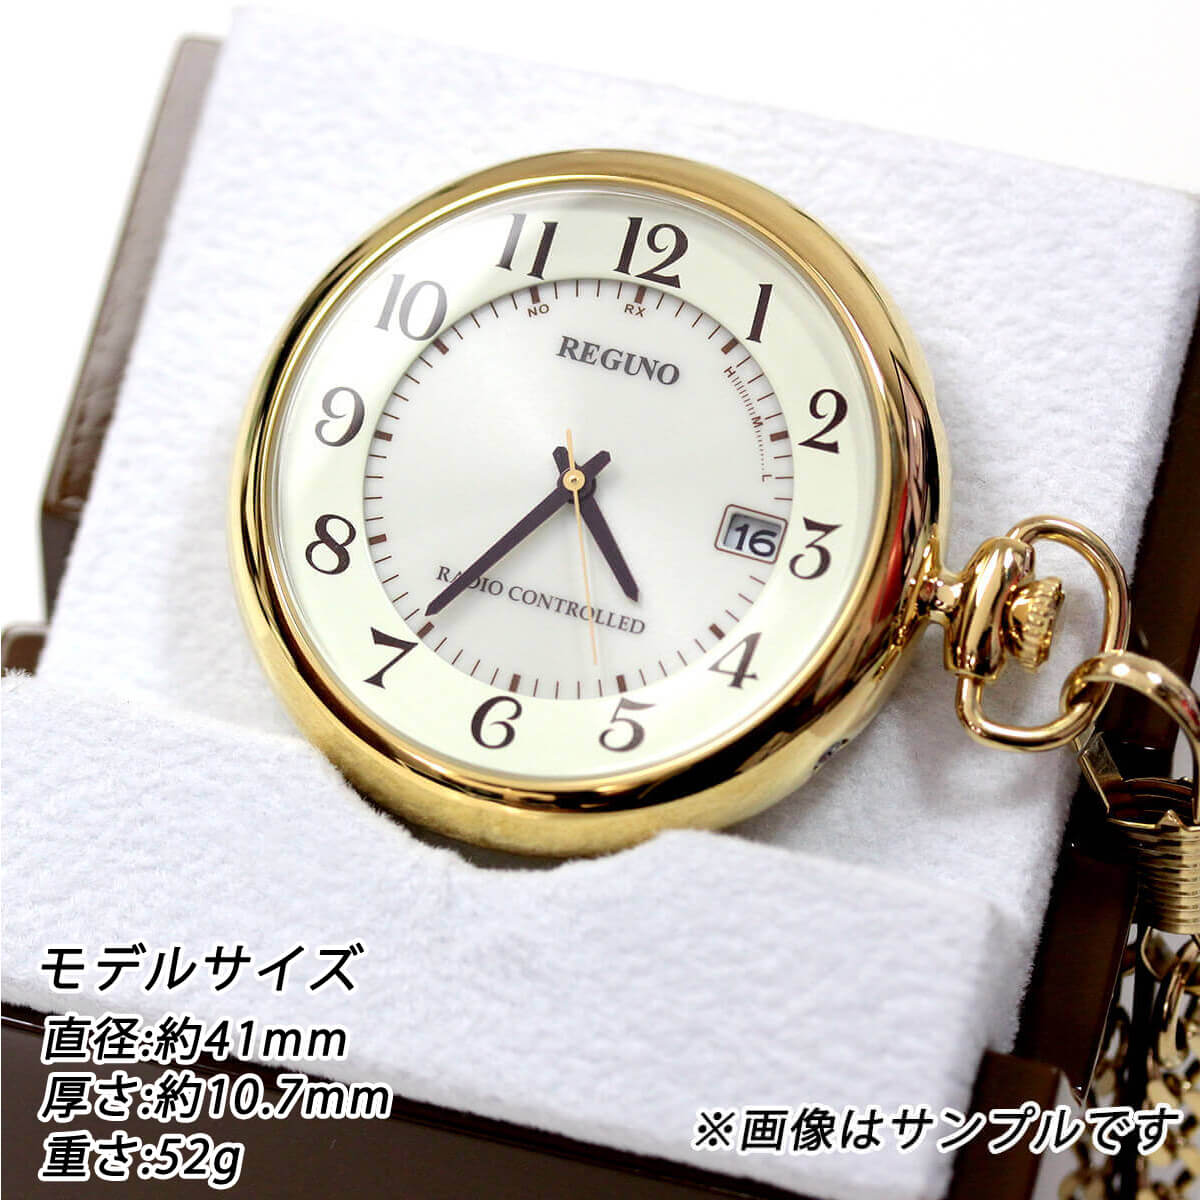 懐中時計を置いたイメージ シチズン citizen kl7-922-31 ゴールドカラー